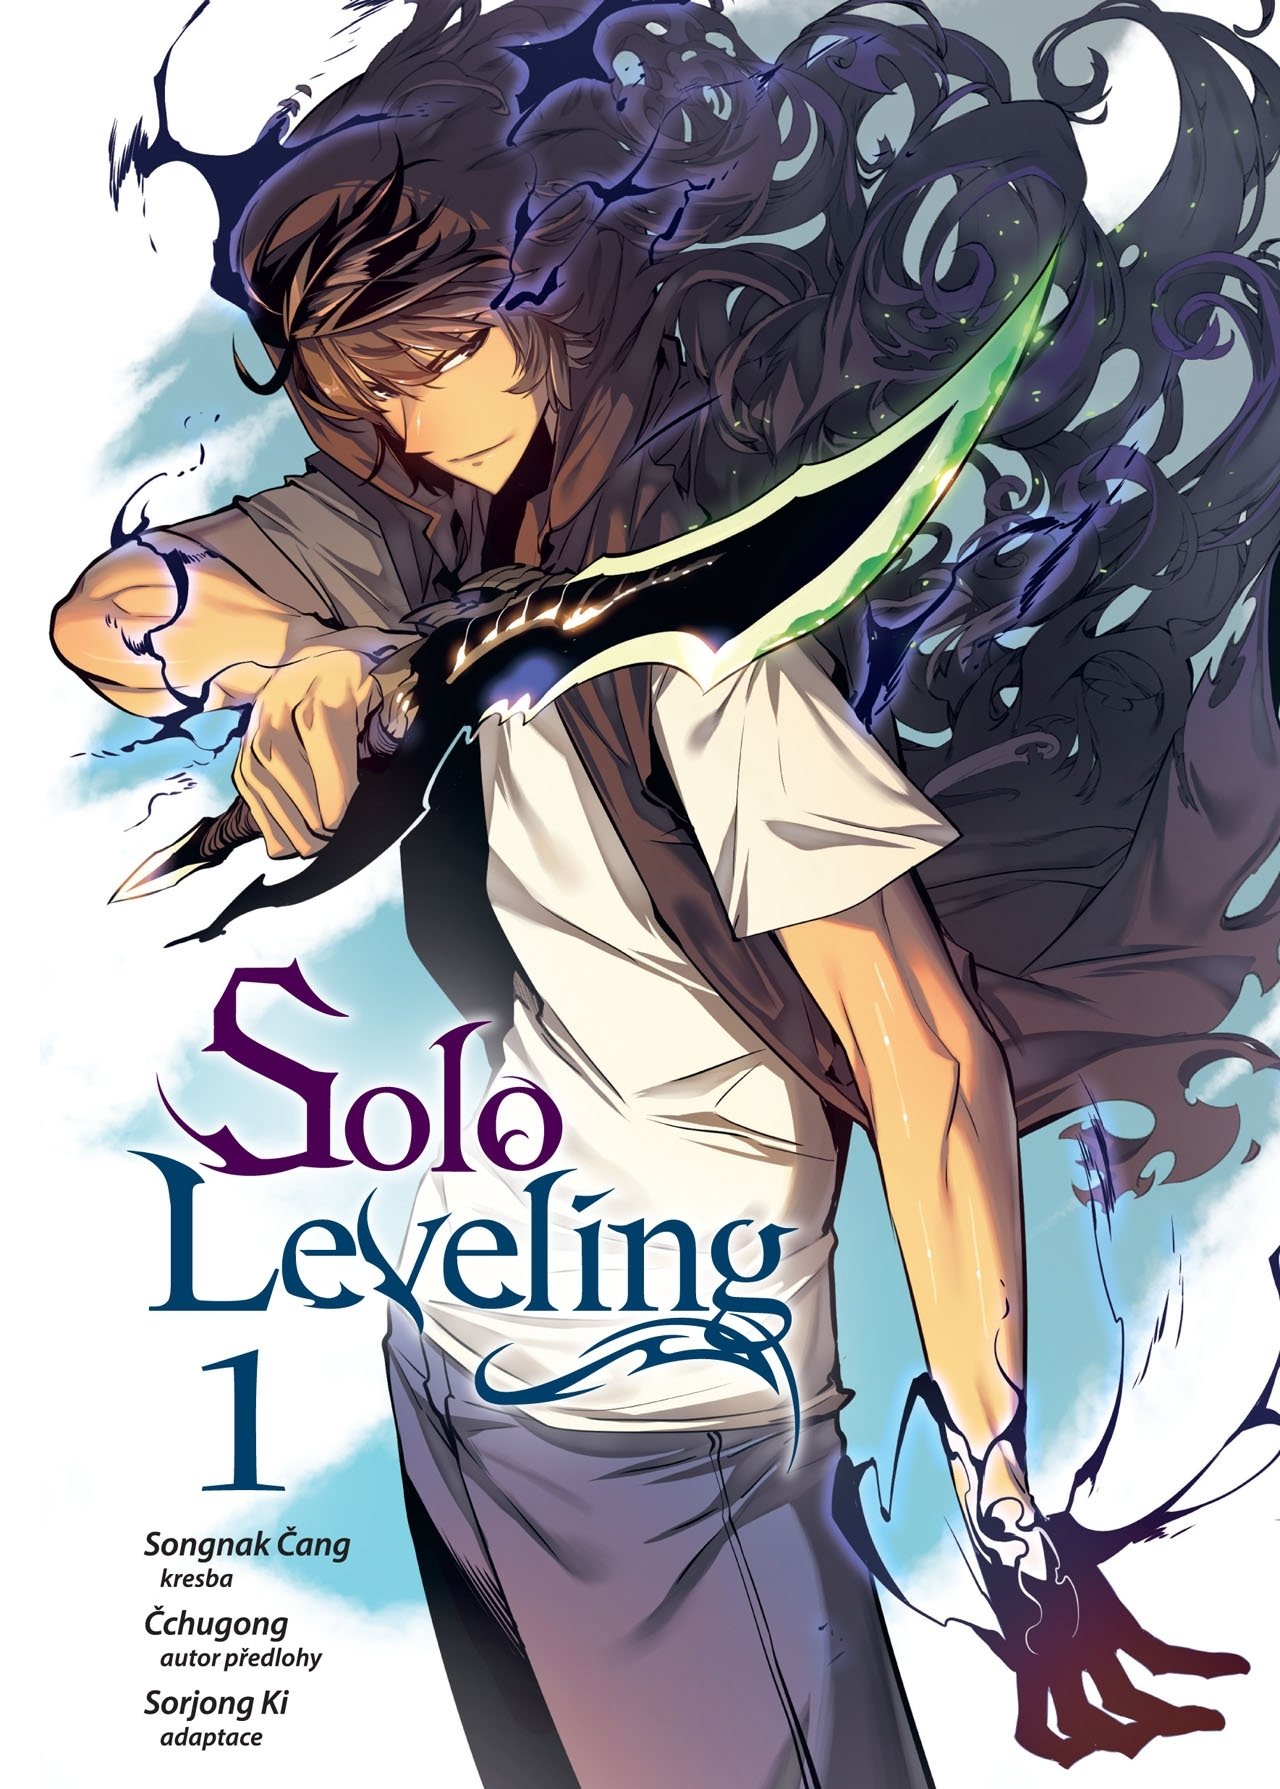 Solo Leveling 1 - Chugong